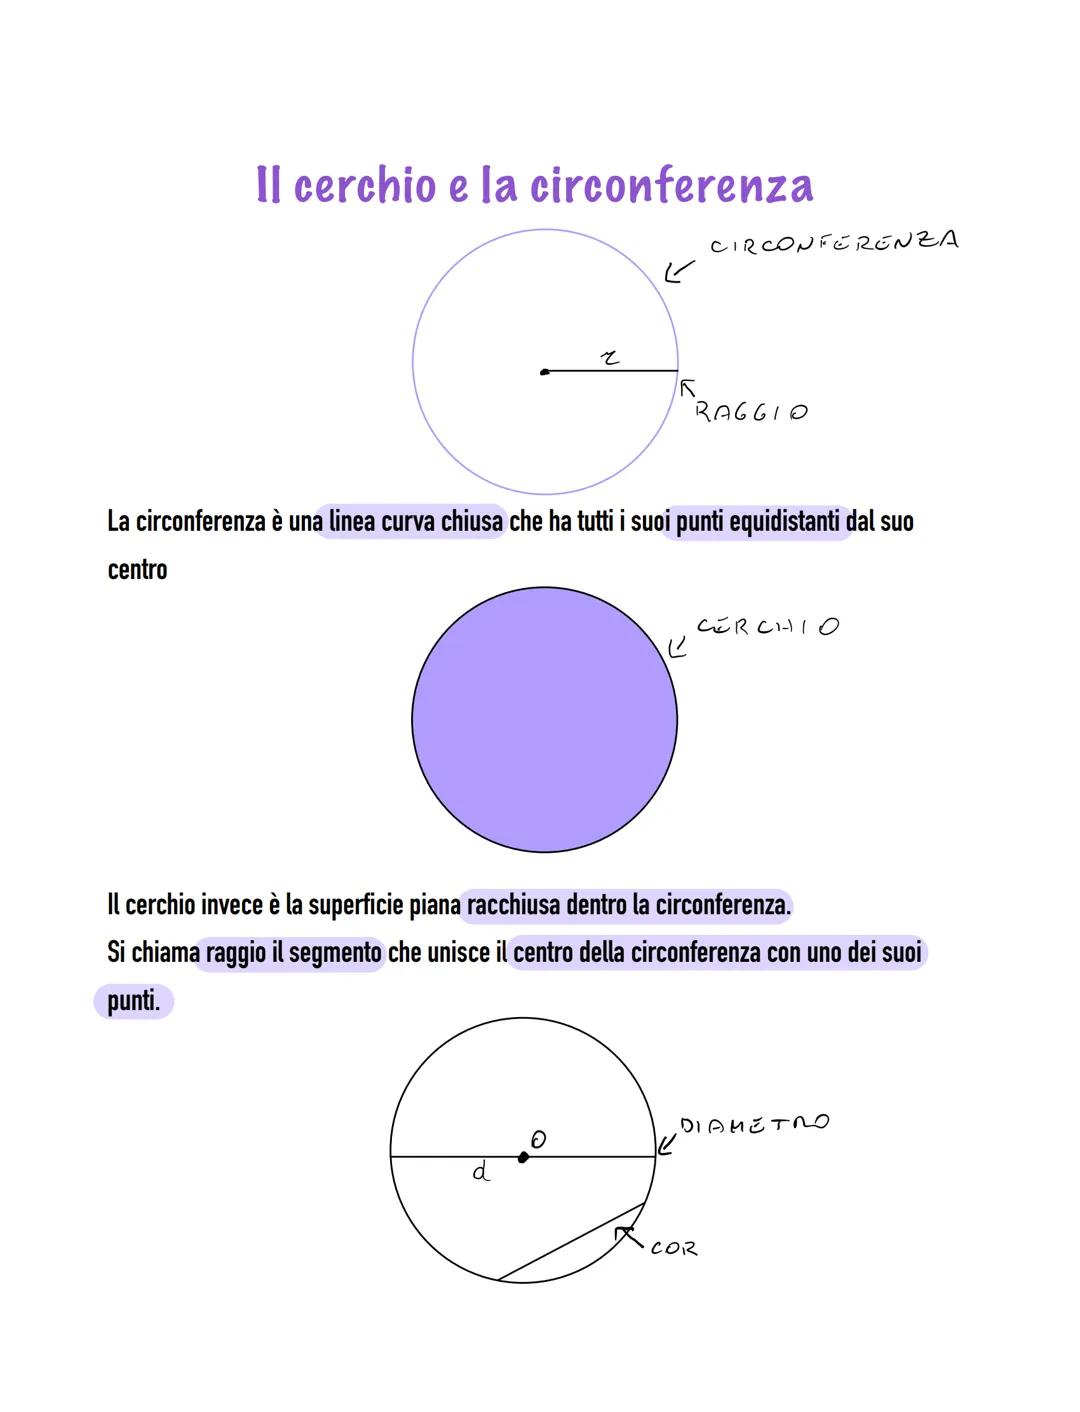 Il cerchio e la circonferenza
て
کا
K
Ľ
La circonferenza è una linea curva chiusa che ha tutti i suoi punti equidistanti dal suo
centro
CIRCO